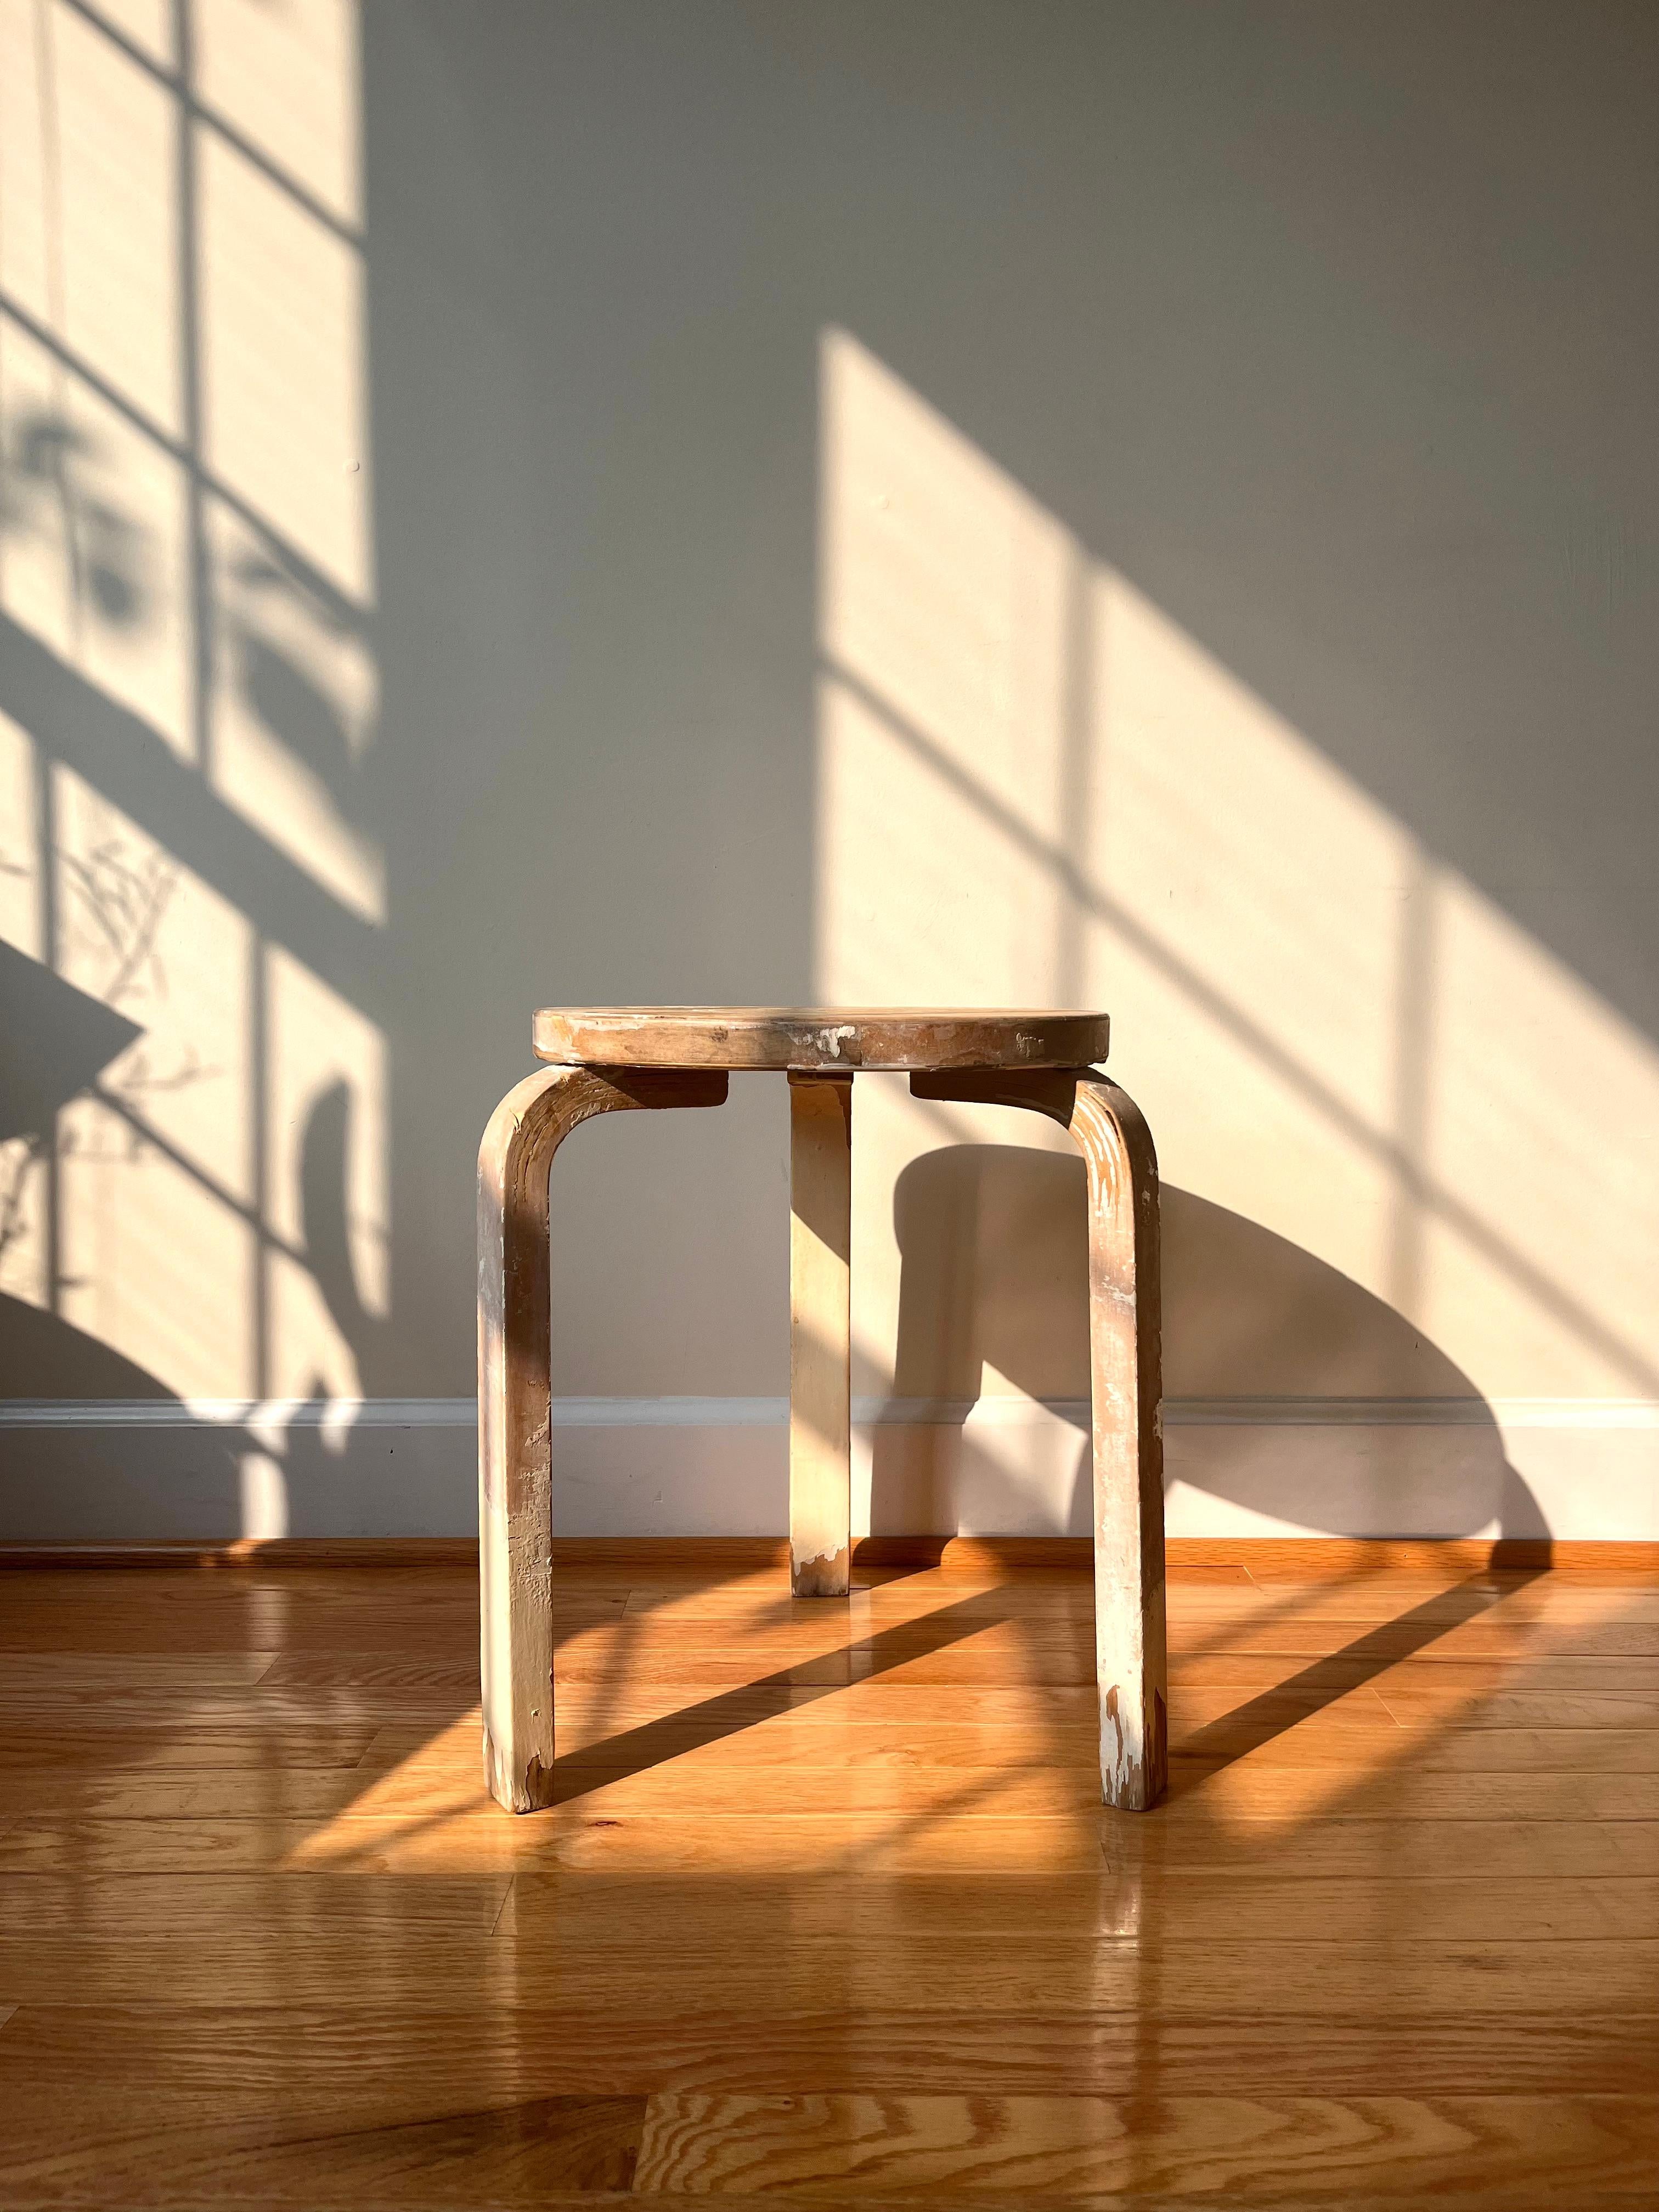 Alvar Aaltos ikonischer Hocker 60 ist das elementarste aller Möbelstücke und eignet sich gleichermaßen als Sitzgelegenheit, Tisch, Ablage oder Ausstellungsfläche. 

Das aus den Idealen der Moderne und der finnischen Innovation hervorgegangene